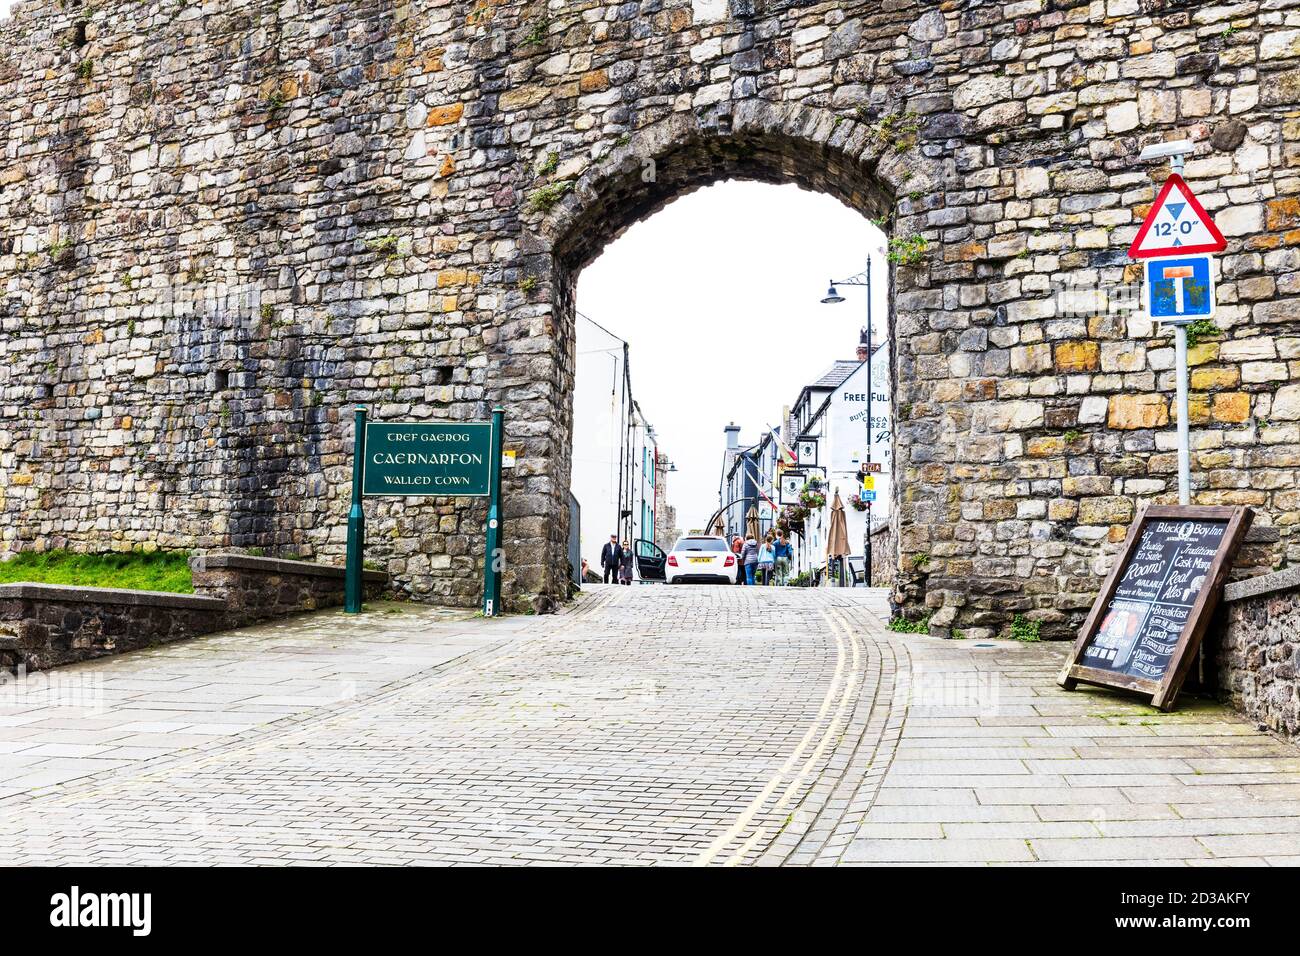 Caernarfon Burgmauern, Caernarfon Stadt, Wales, Großbritannien, Caernarfon Stadtmauern, Bogen in Wand, Mauerbogen, Caernarfon Wales, ummauerte Stadt, ummauerte Städte, Mauer Stockfoto